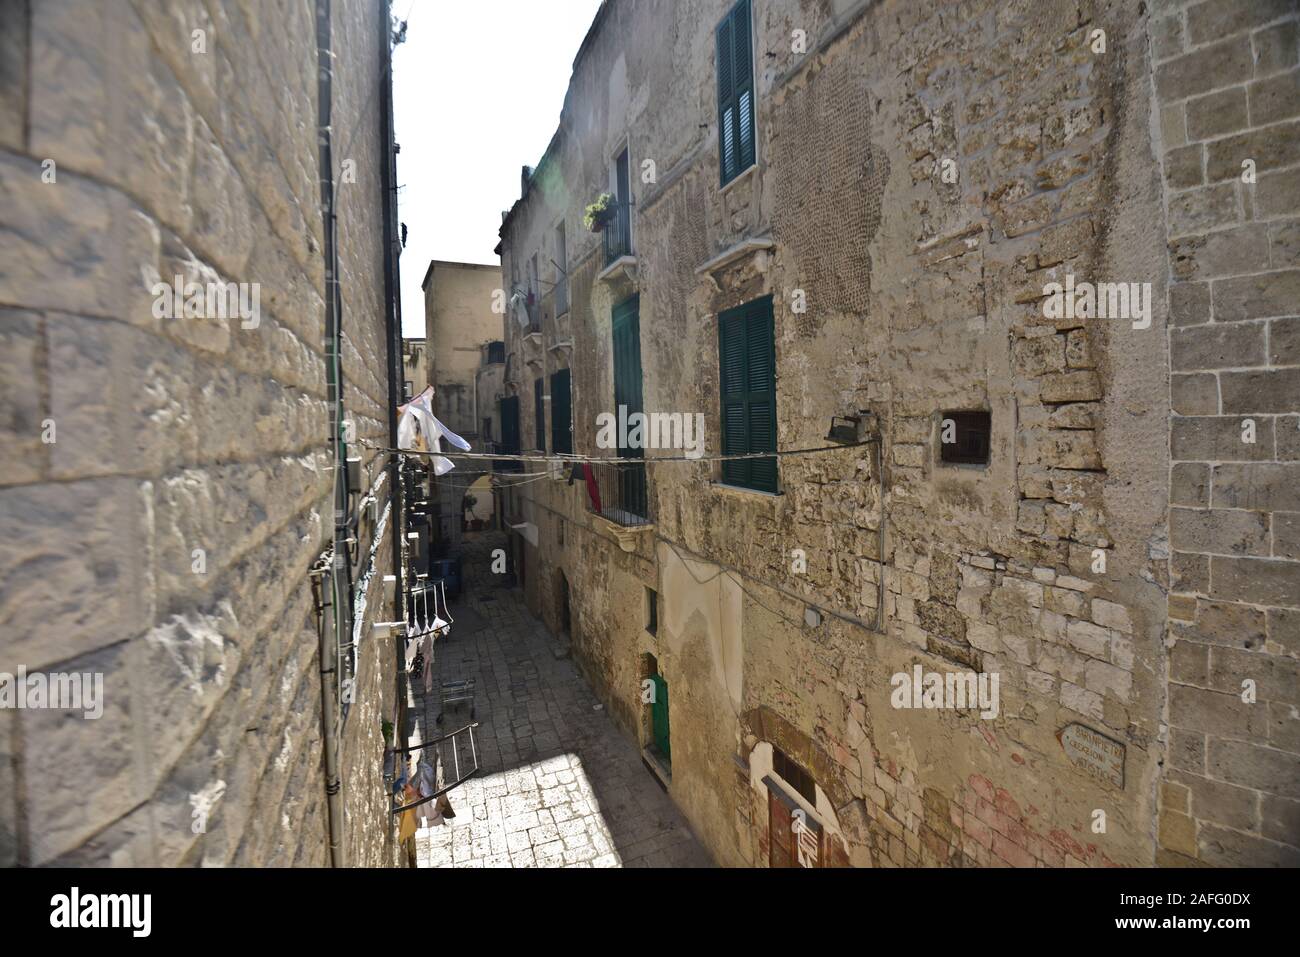 La vieille ville de Bari (Citta Vecchia), Italie Banque D'Images